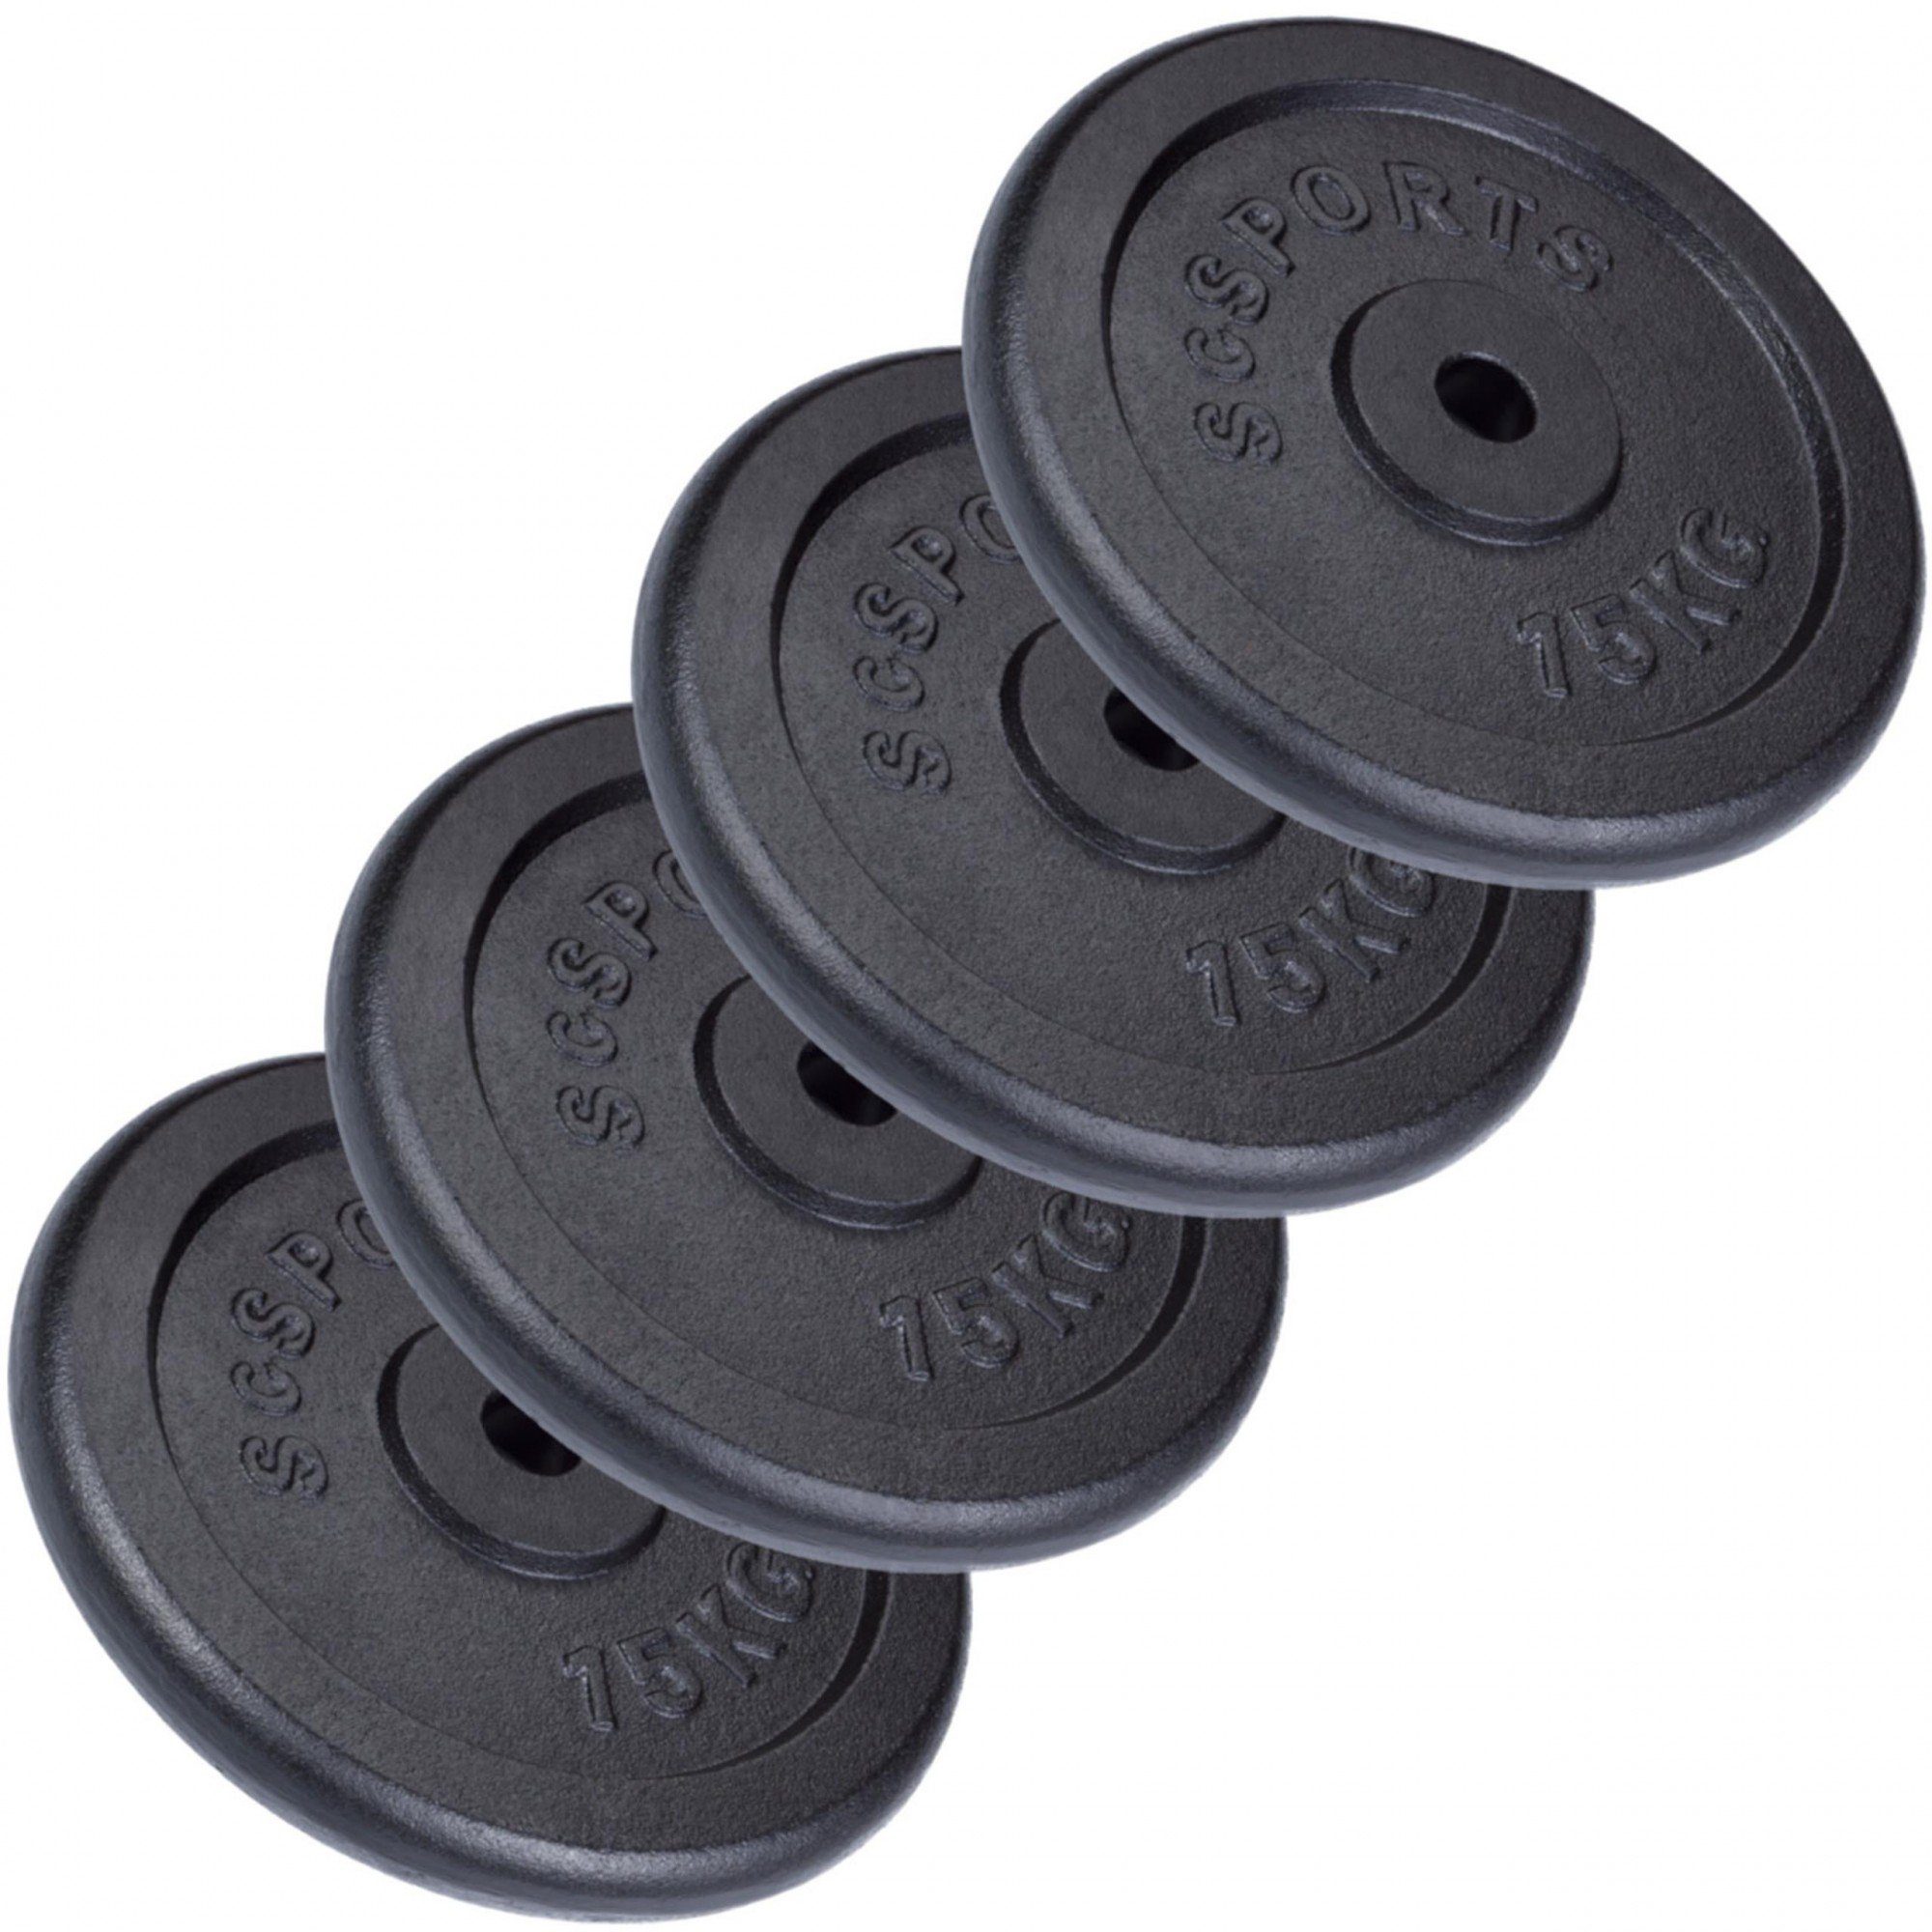 ScSPORTS® Hantelscheiben Set 60 (10002534-tlg) Gusseisen Gewichtsscheiben Gewichte, 30mm Ø kg